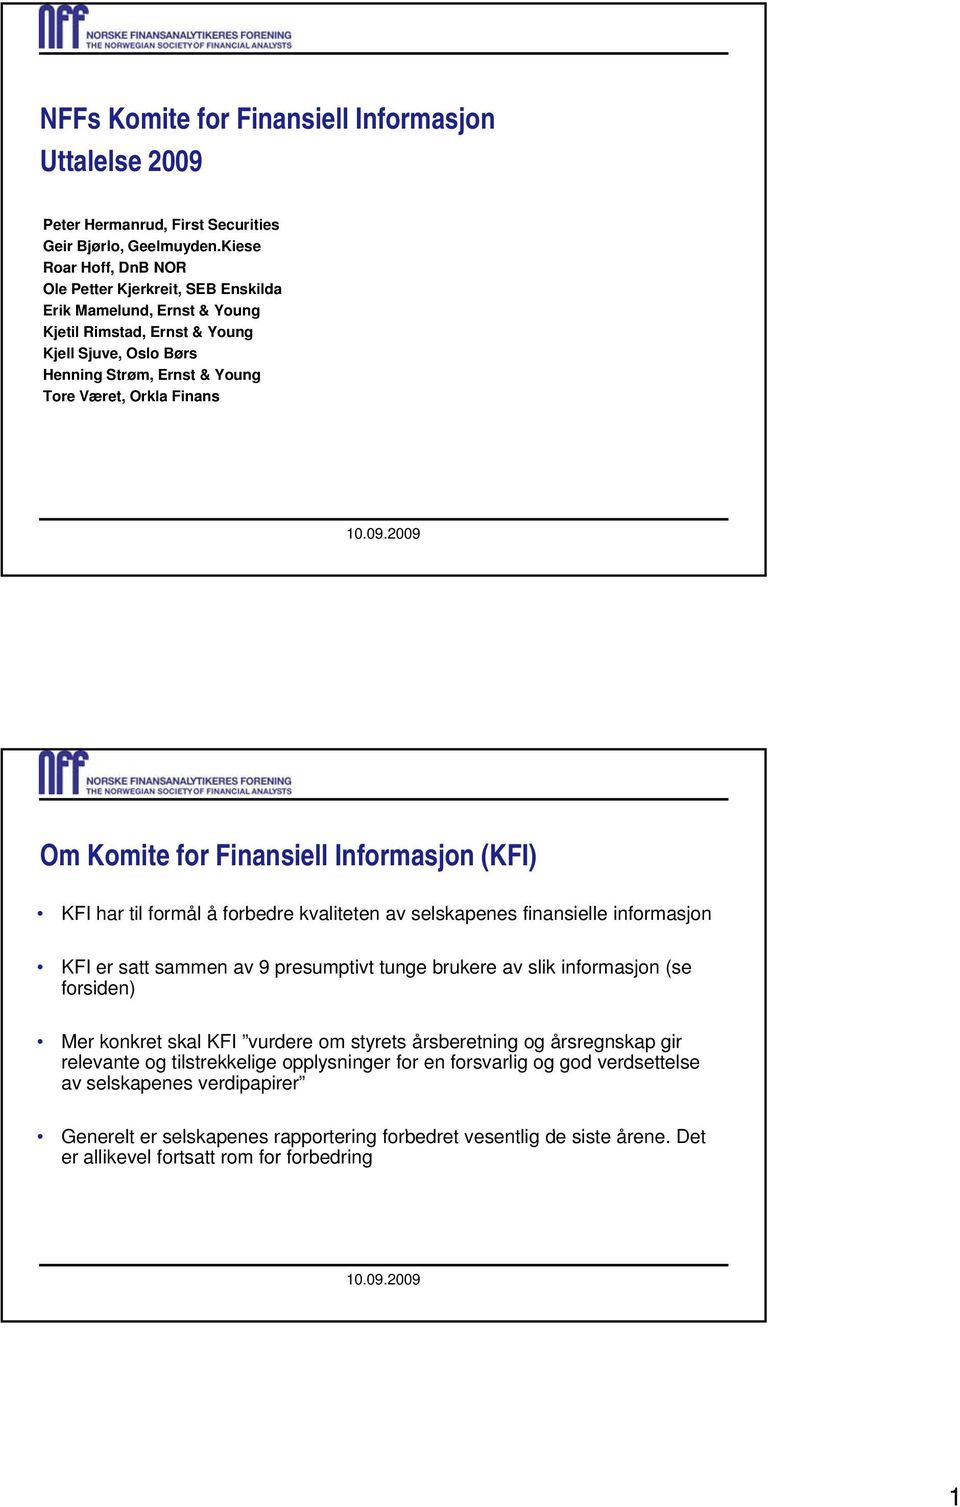 Komite for Finansiell Informasjon (KFI) KFI har til formål å forbedre kvaliteten av selskapenes finansielle informasjon KFI er satt sammen av 9 presumptivt tunge brukere av slik informasjon (se